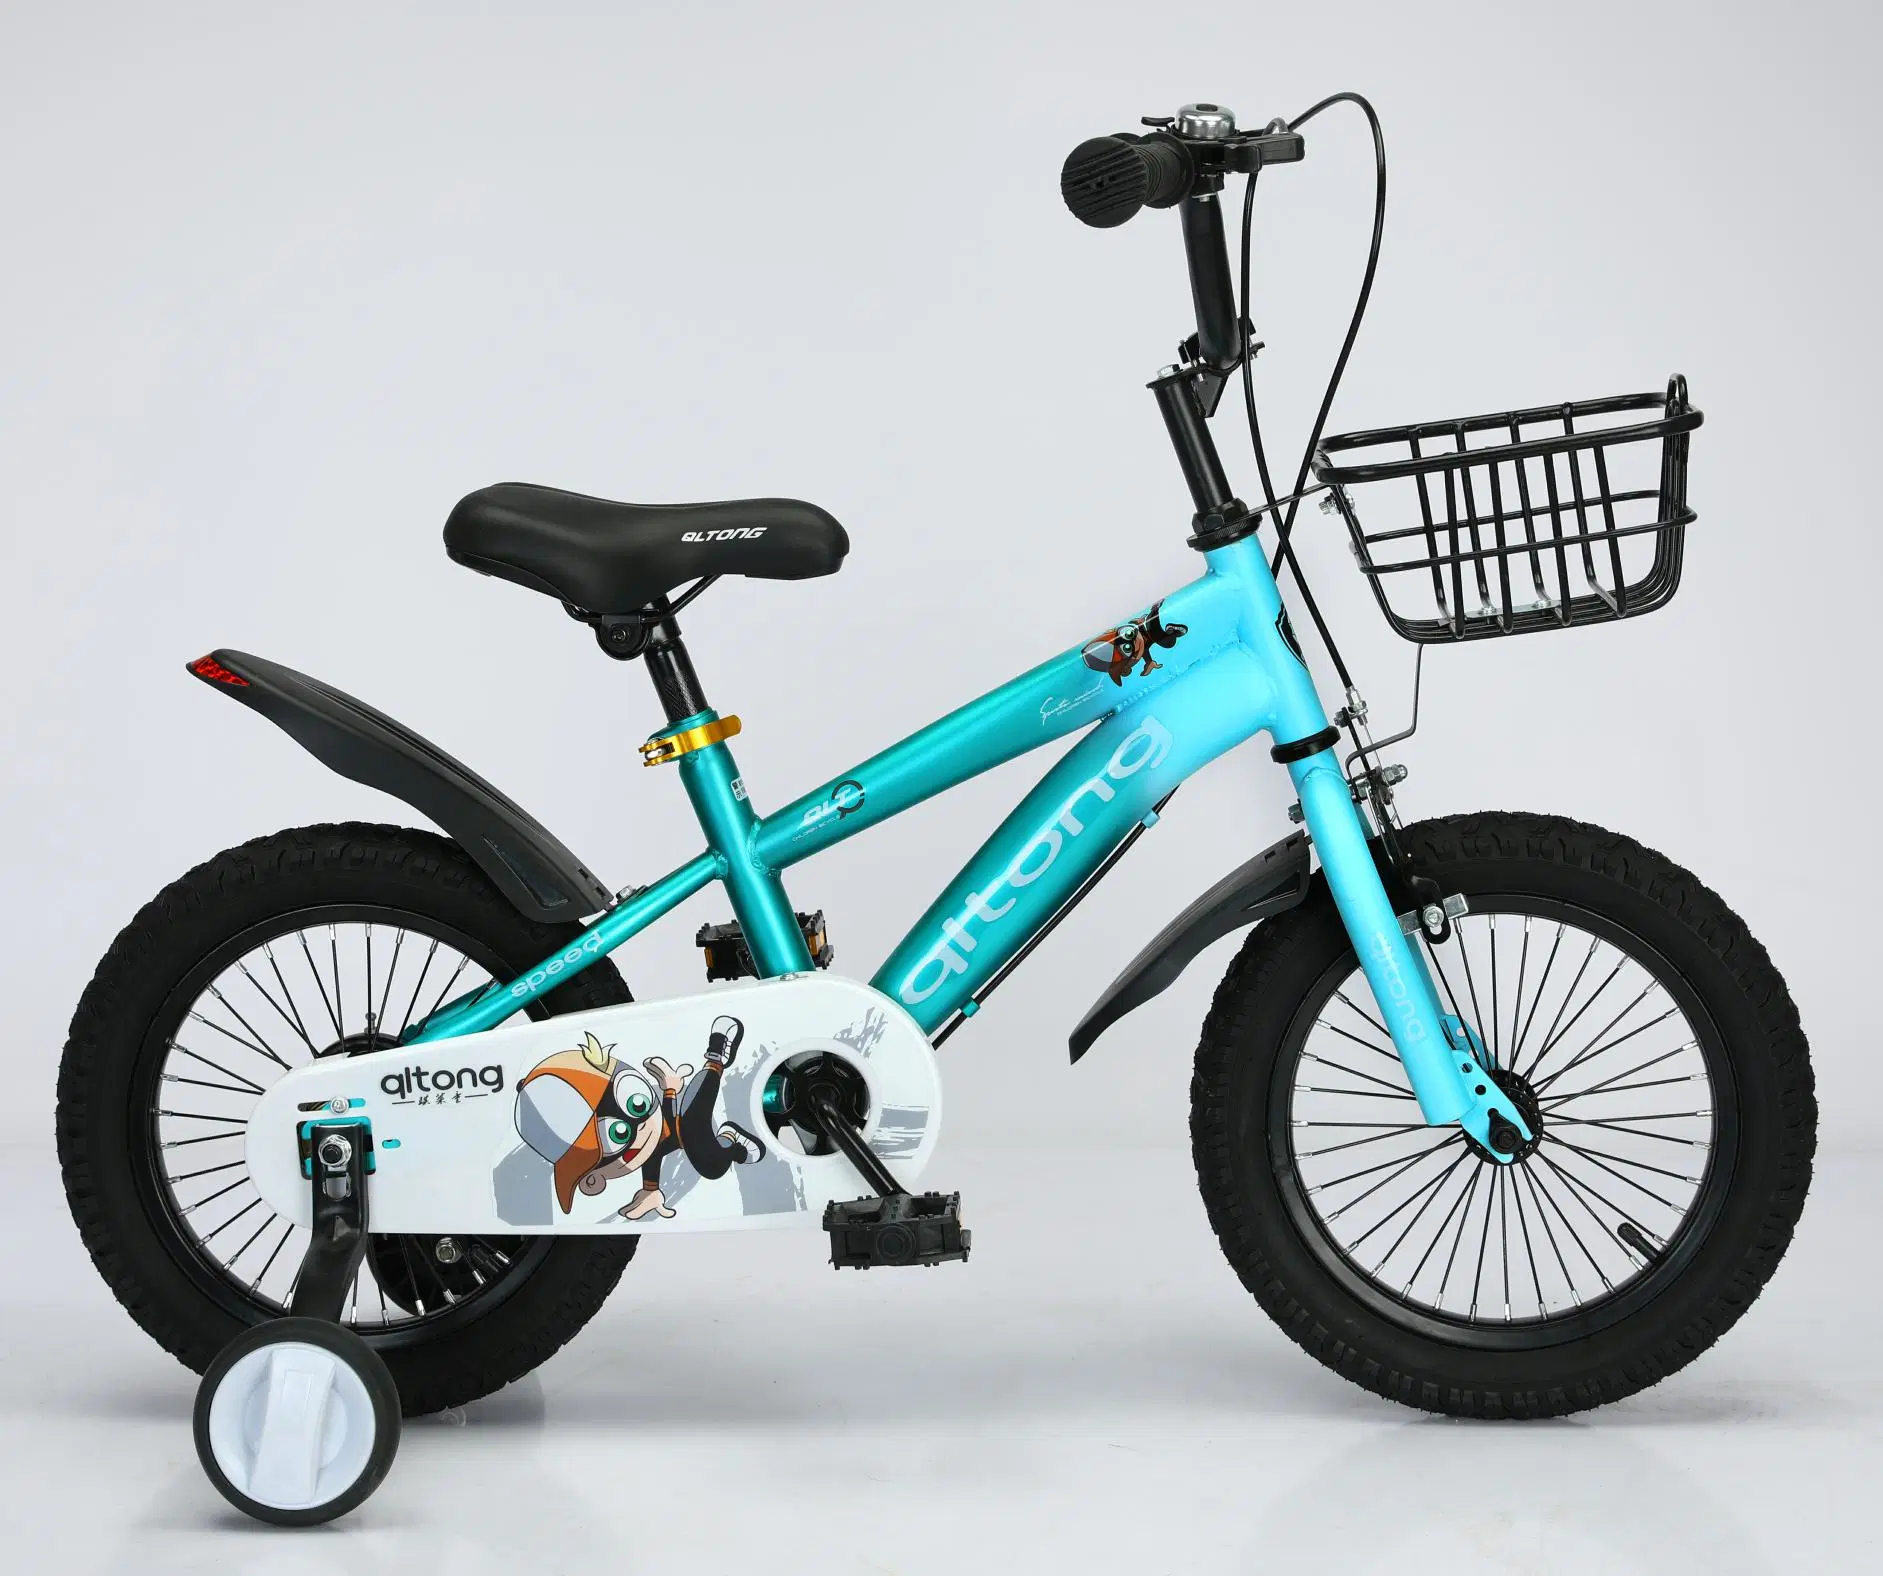 Heißer Verkauf OEM Service Kinder Fahrrad / Kinder Fahrrad / Kinder Spielzeug Für 3-8 Jahre